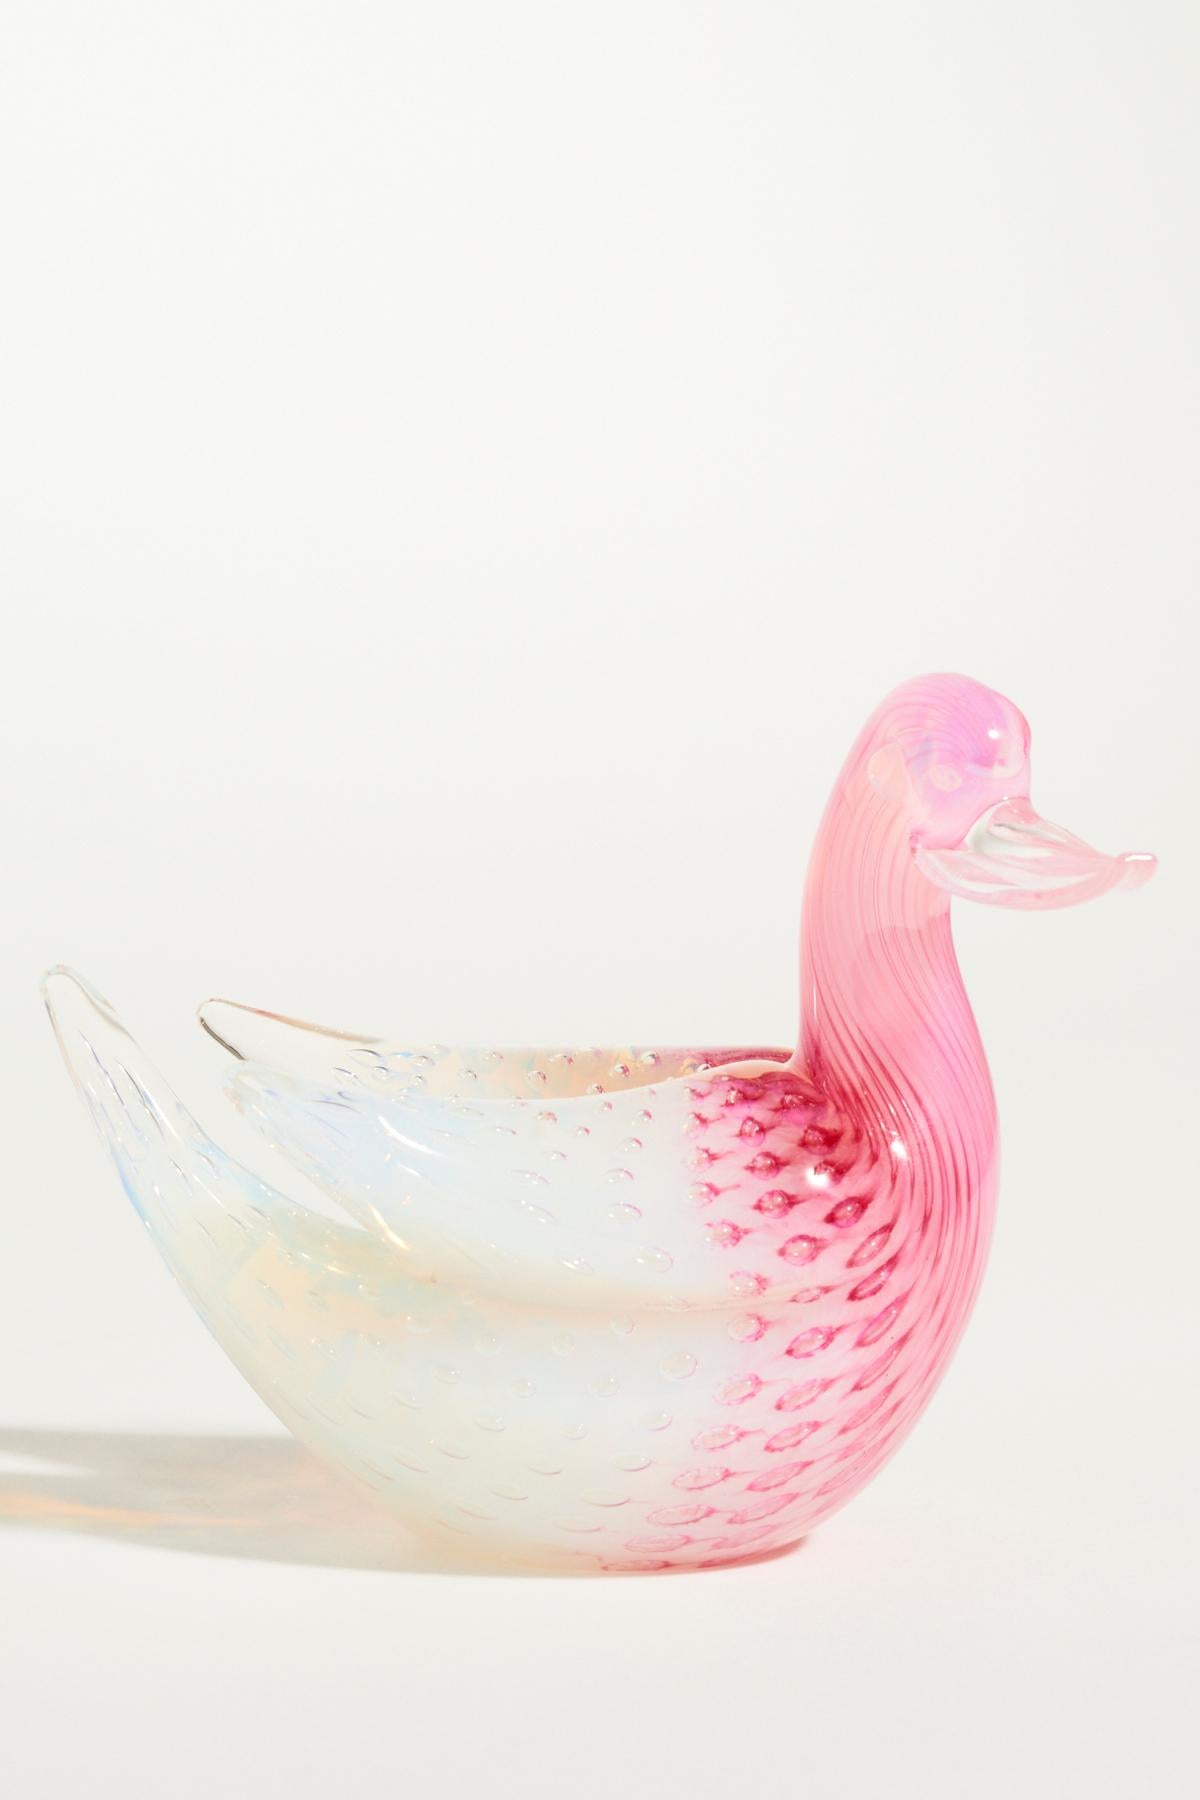 Mid-20th Century Pink Murano Swan